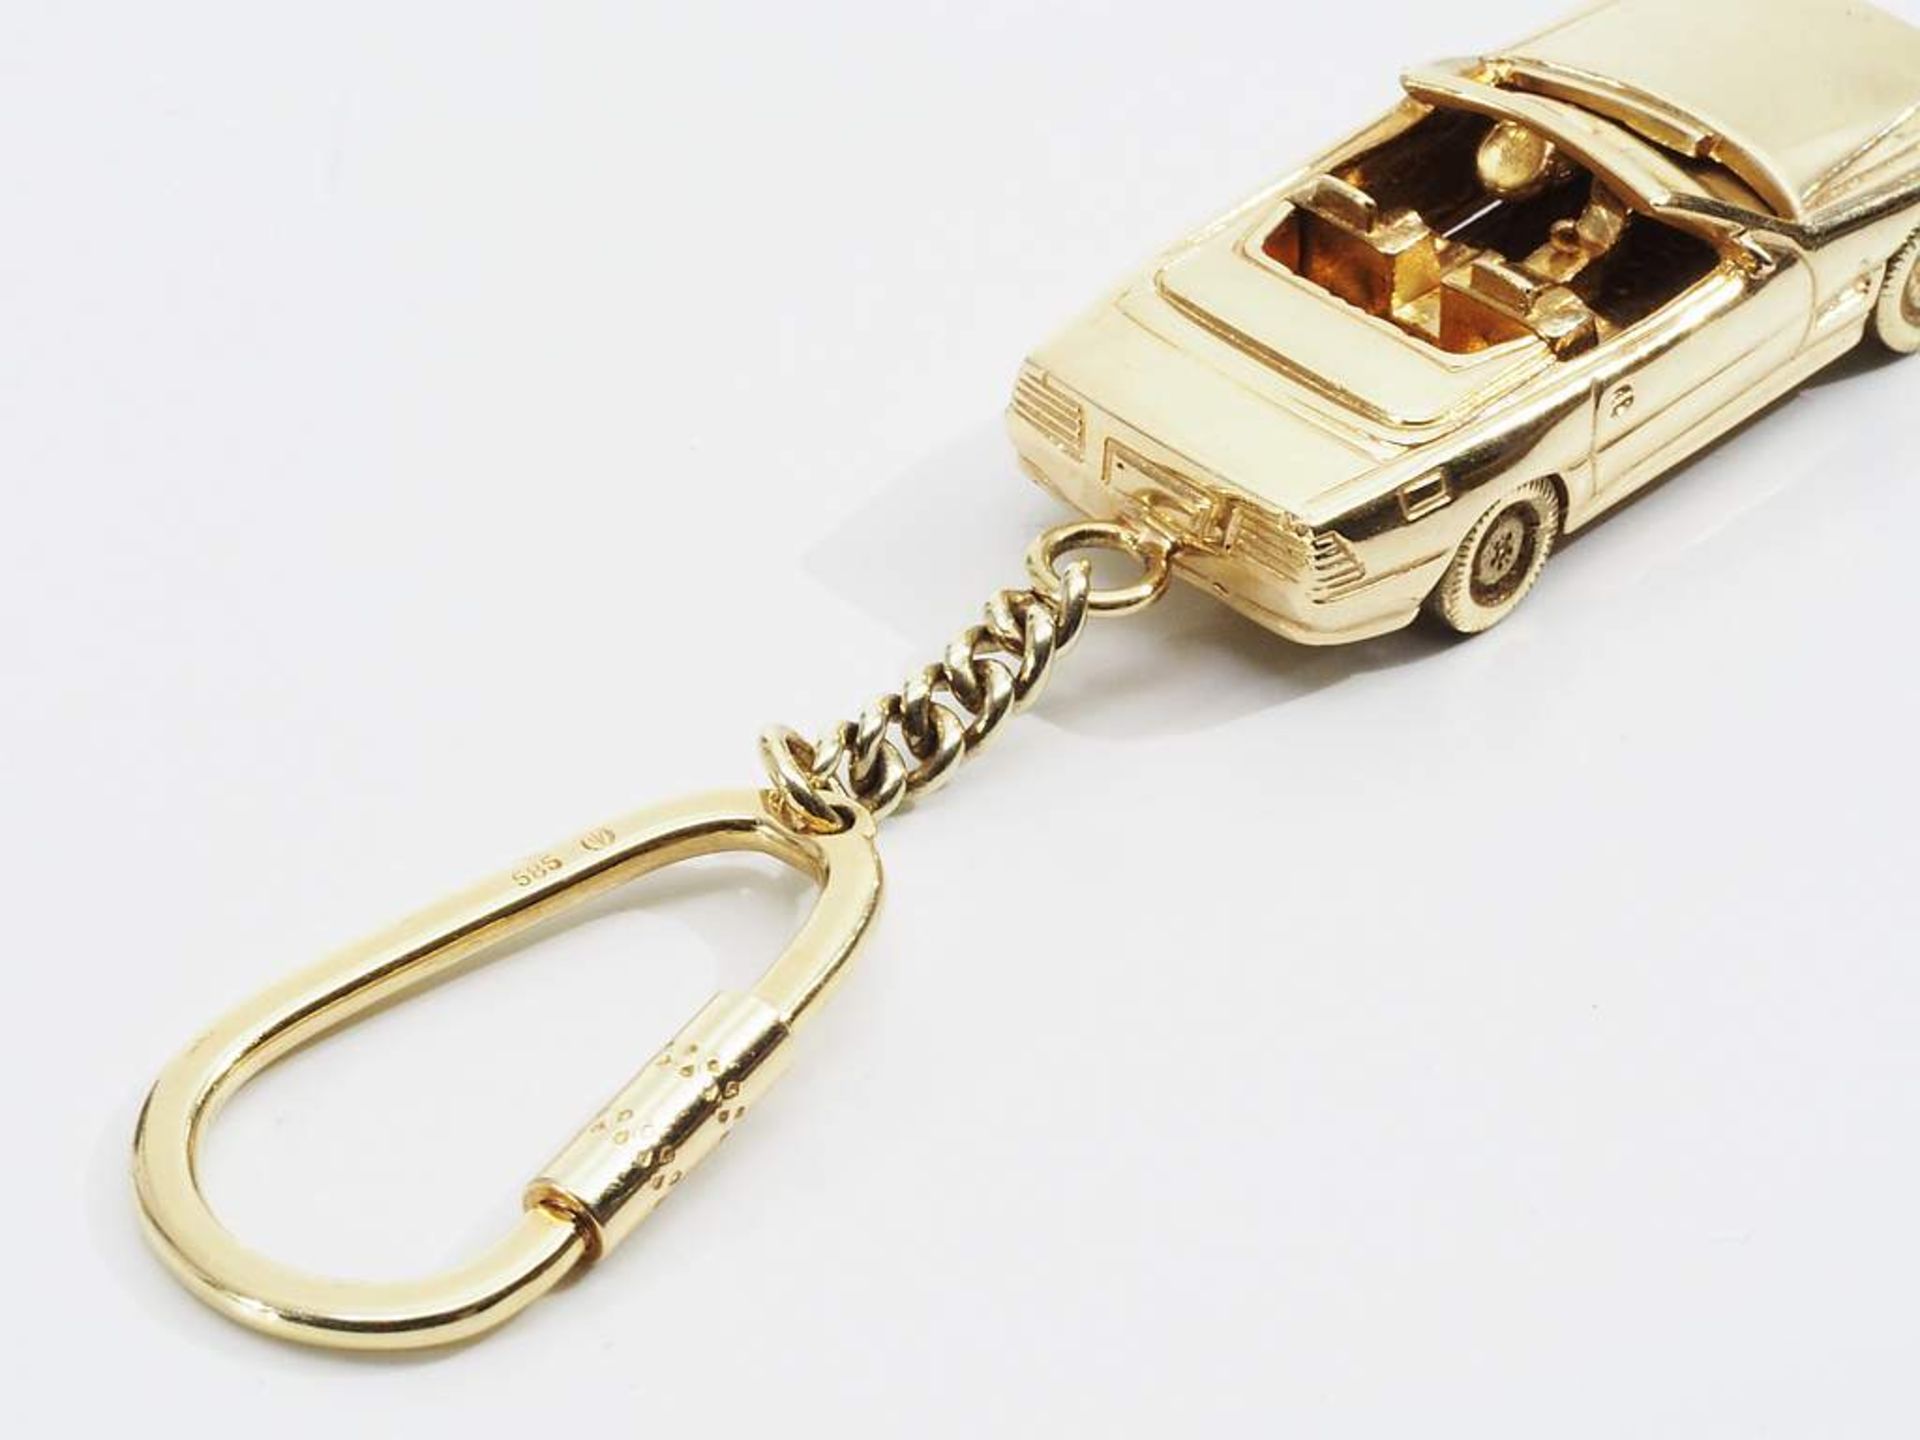 Schlüsselanhänger mit Modellauto "MERCEDES SL Cabrio". 585er Gelbgold. - Bild 5 aus 6